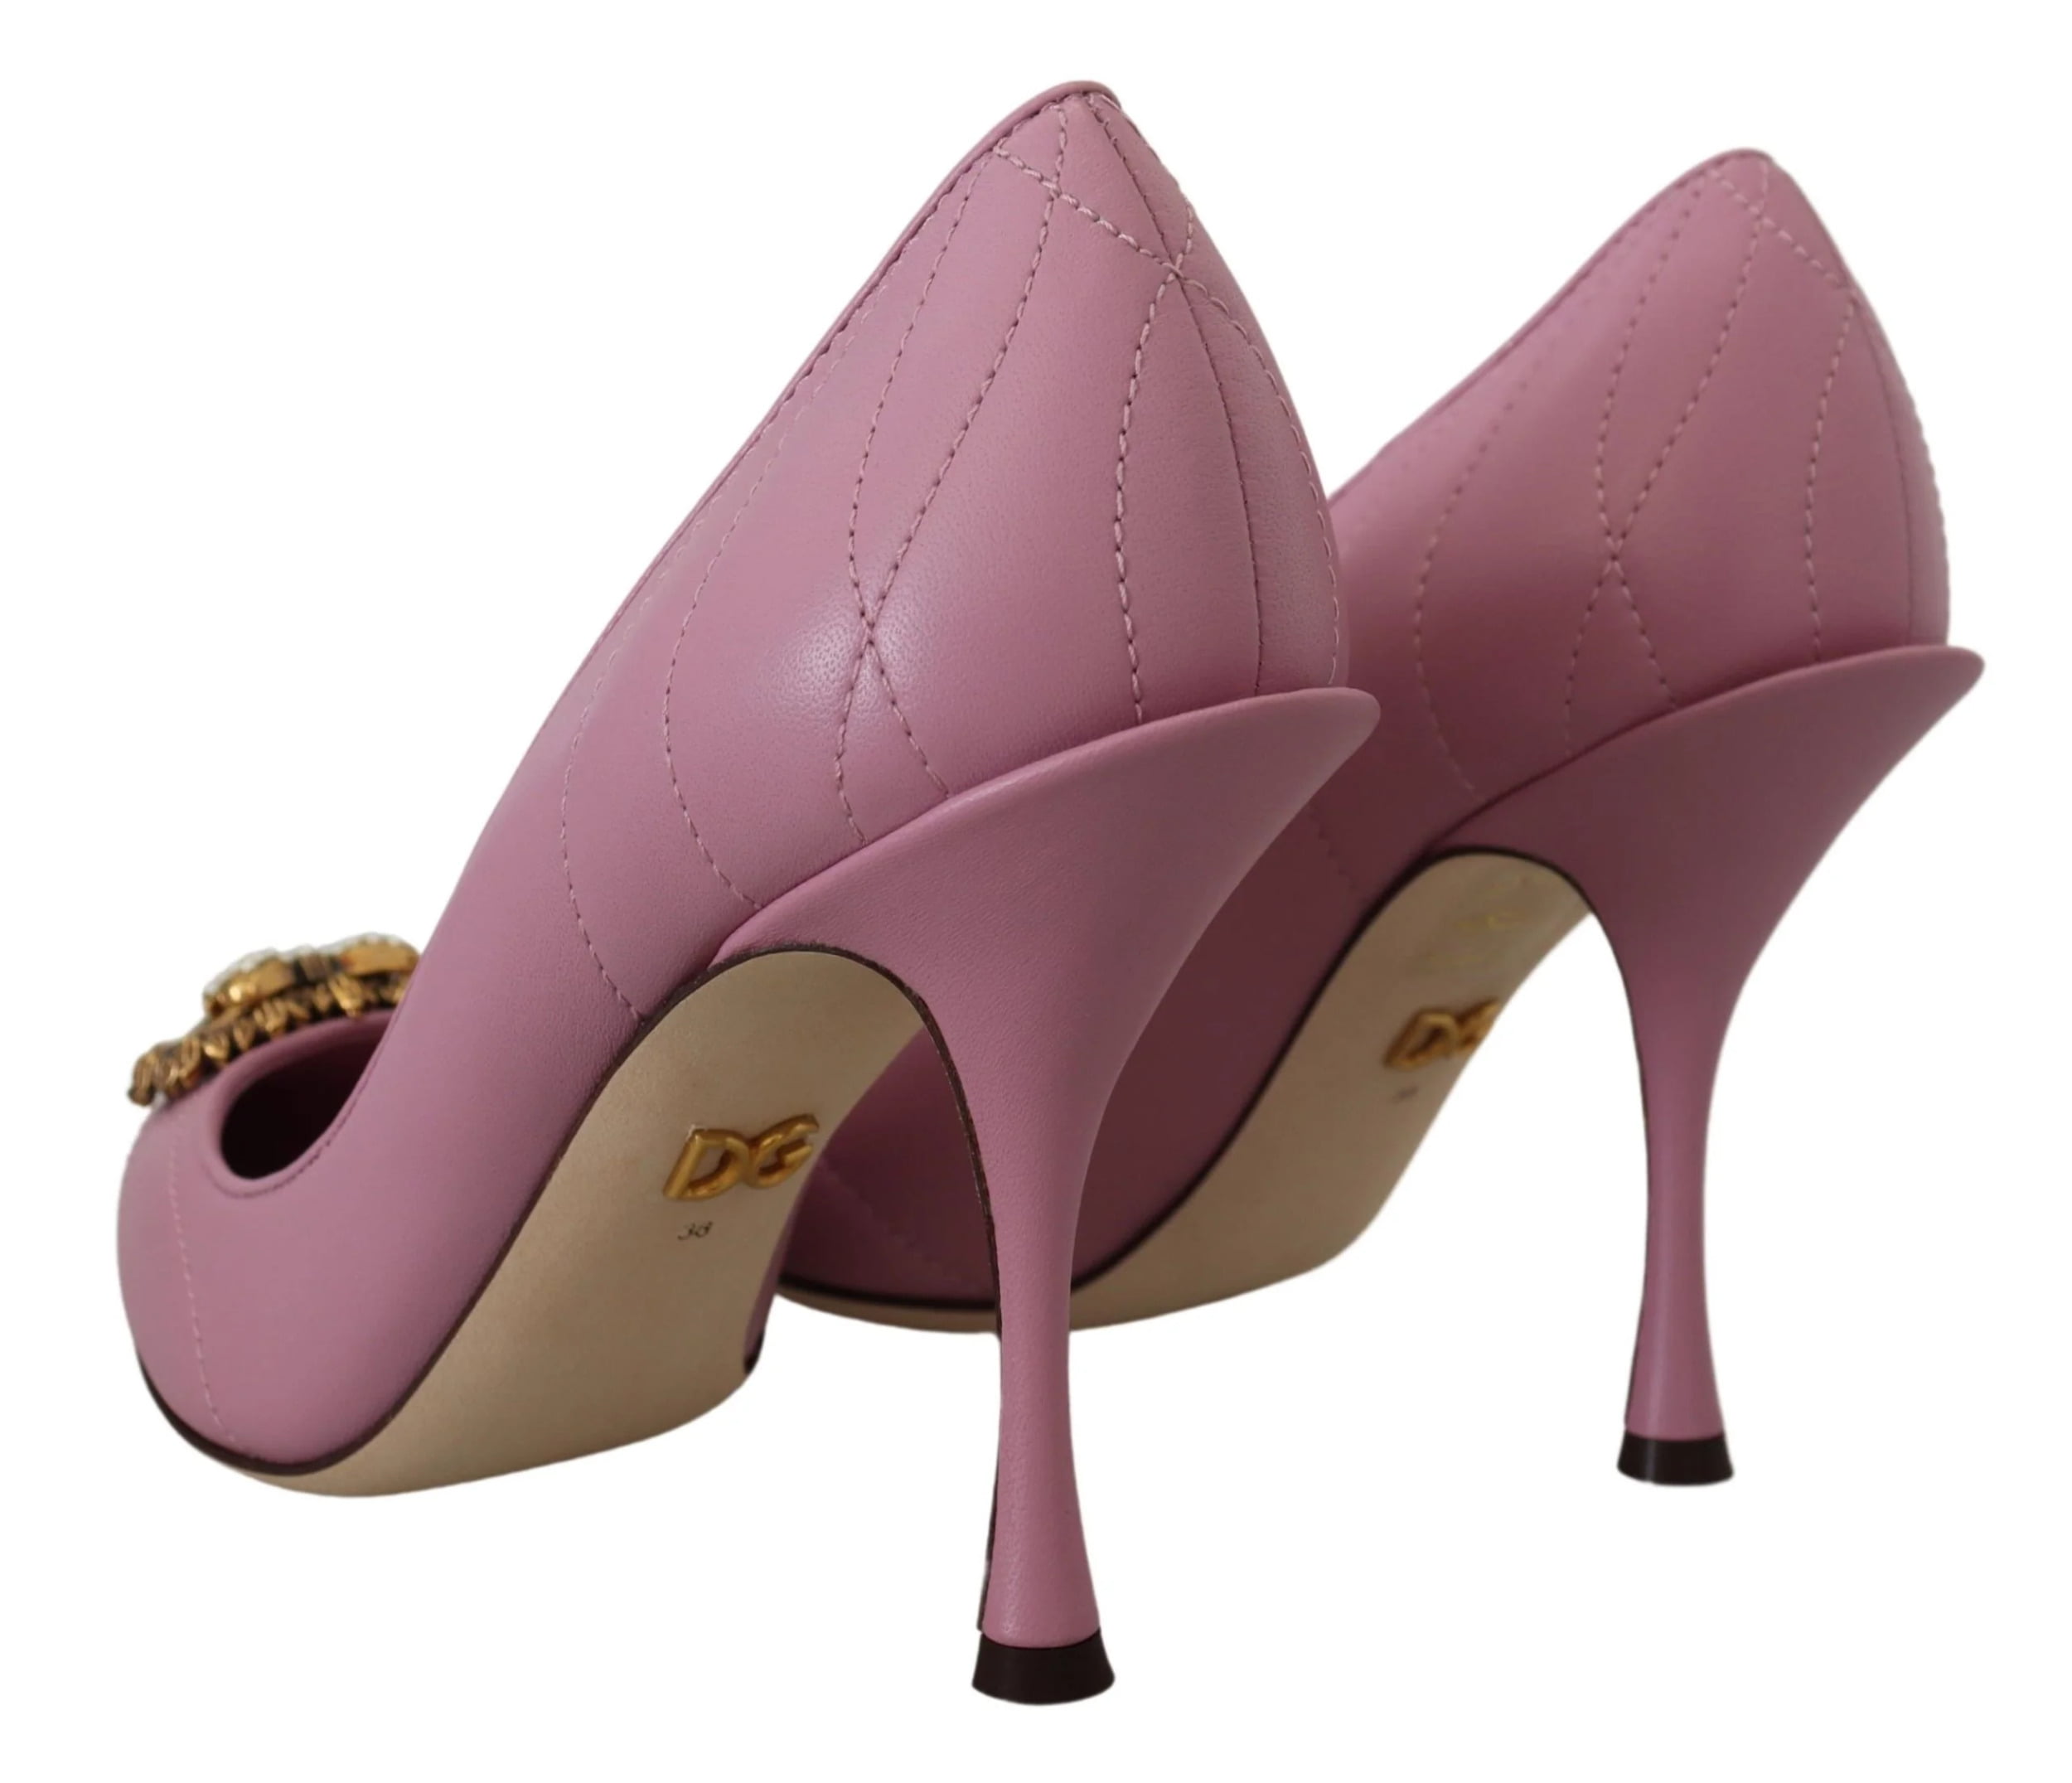 DG heel shoe DOLCE & GABBANA | Blondie Shop